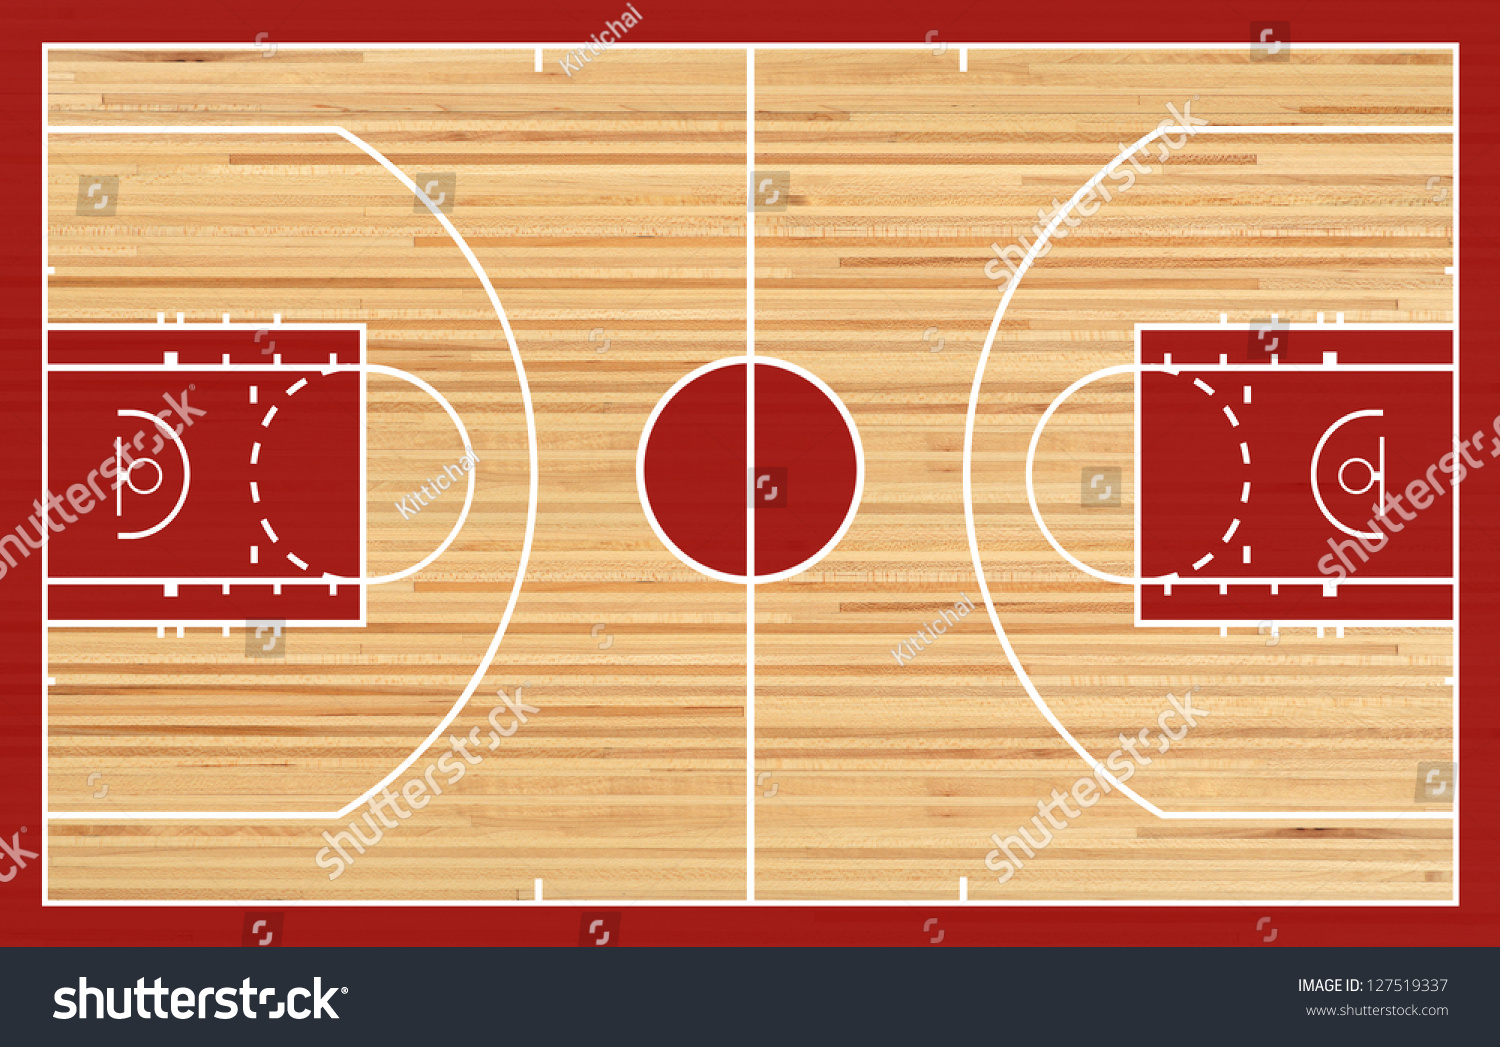 Basketball Court Plan parket